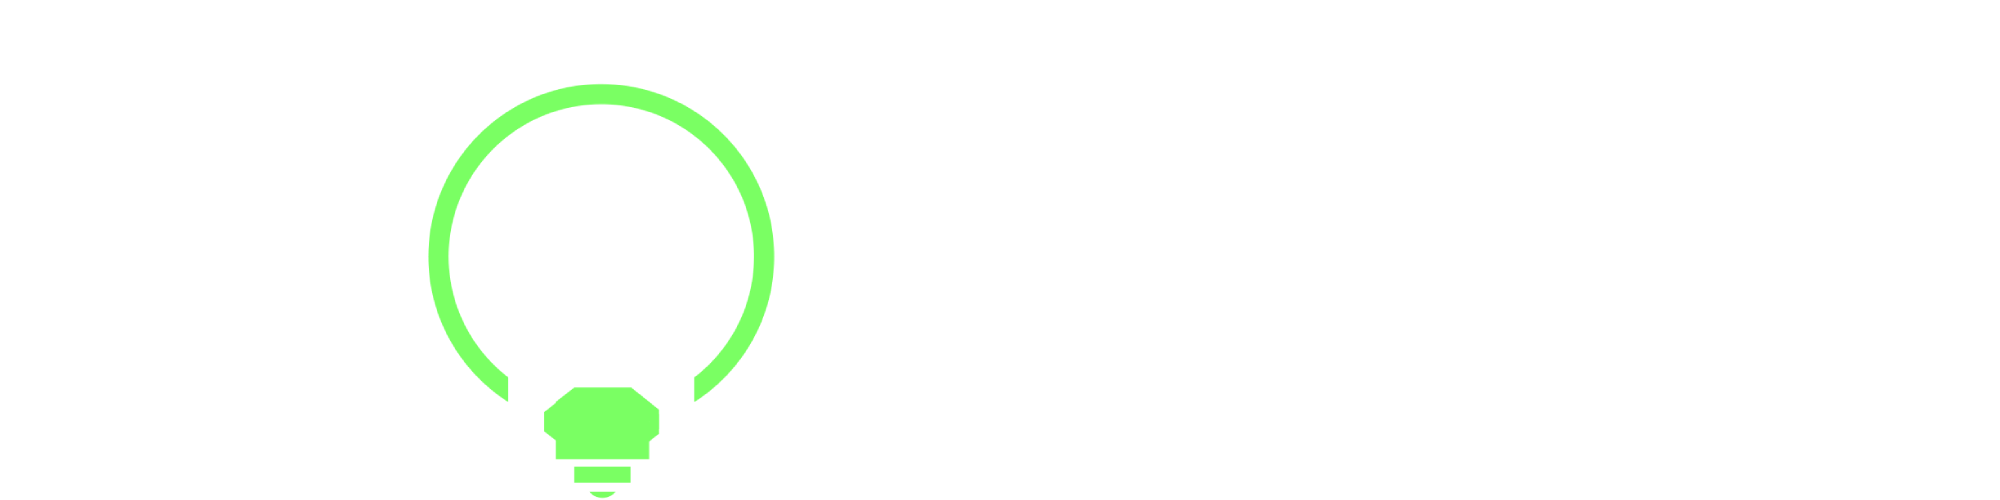 Smartbuildings